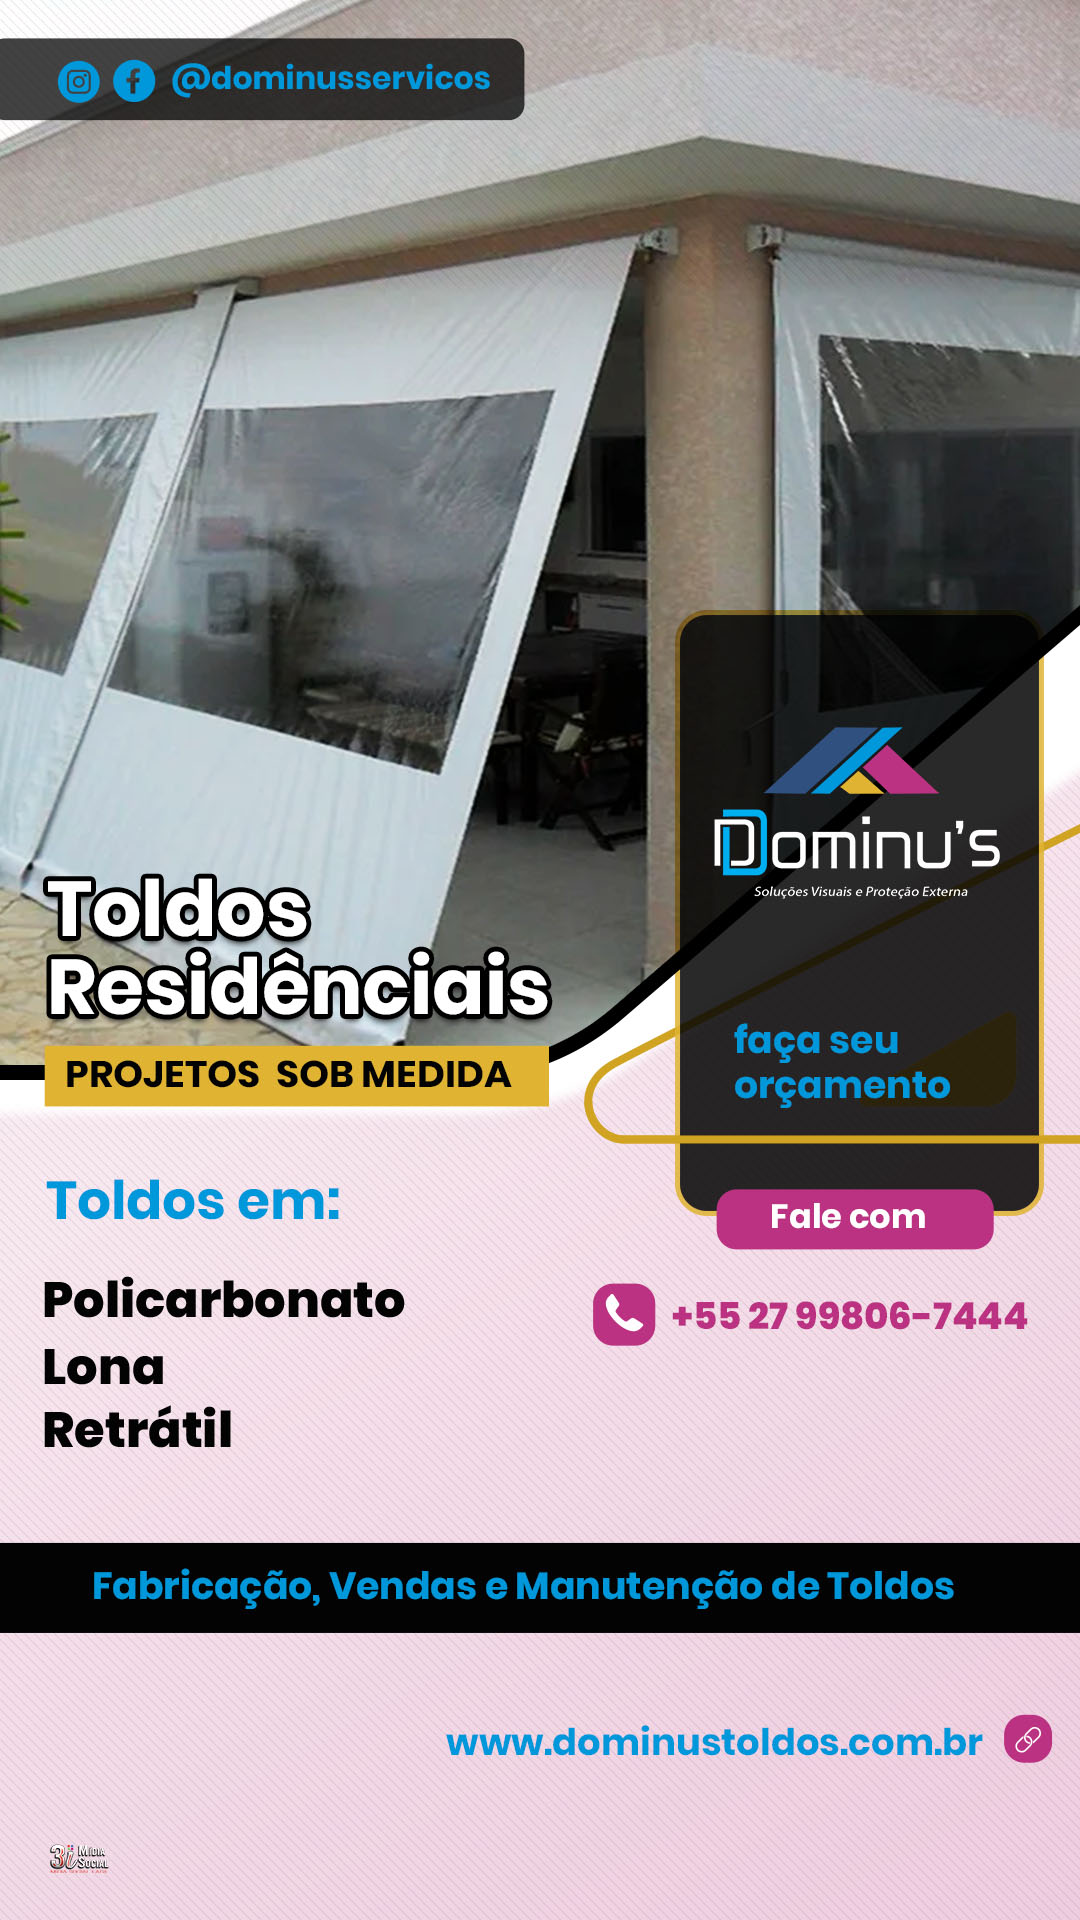 stories - Dominus 2024 - toldos residenciais - 01